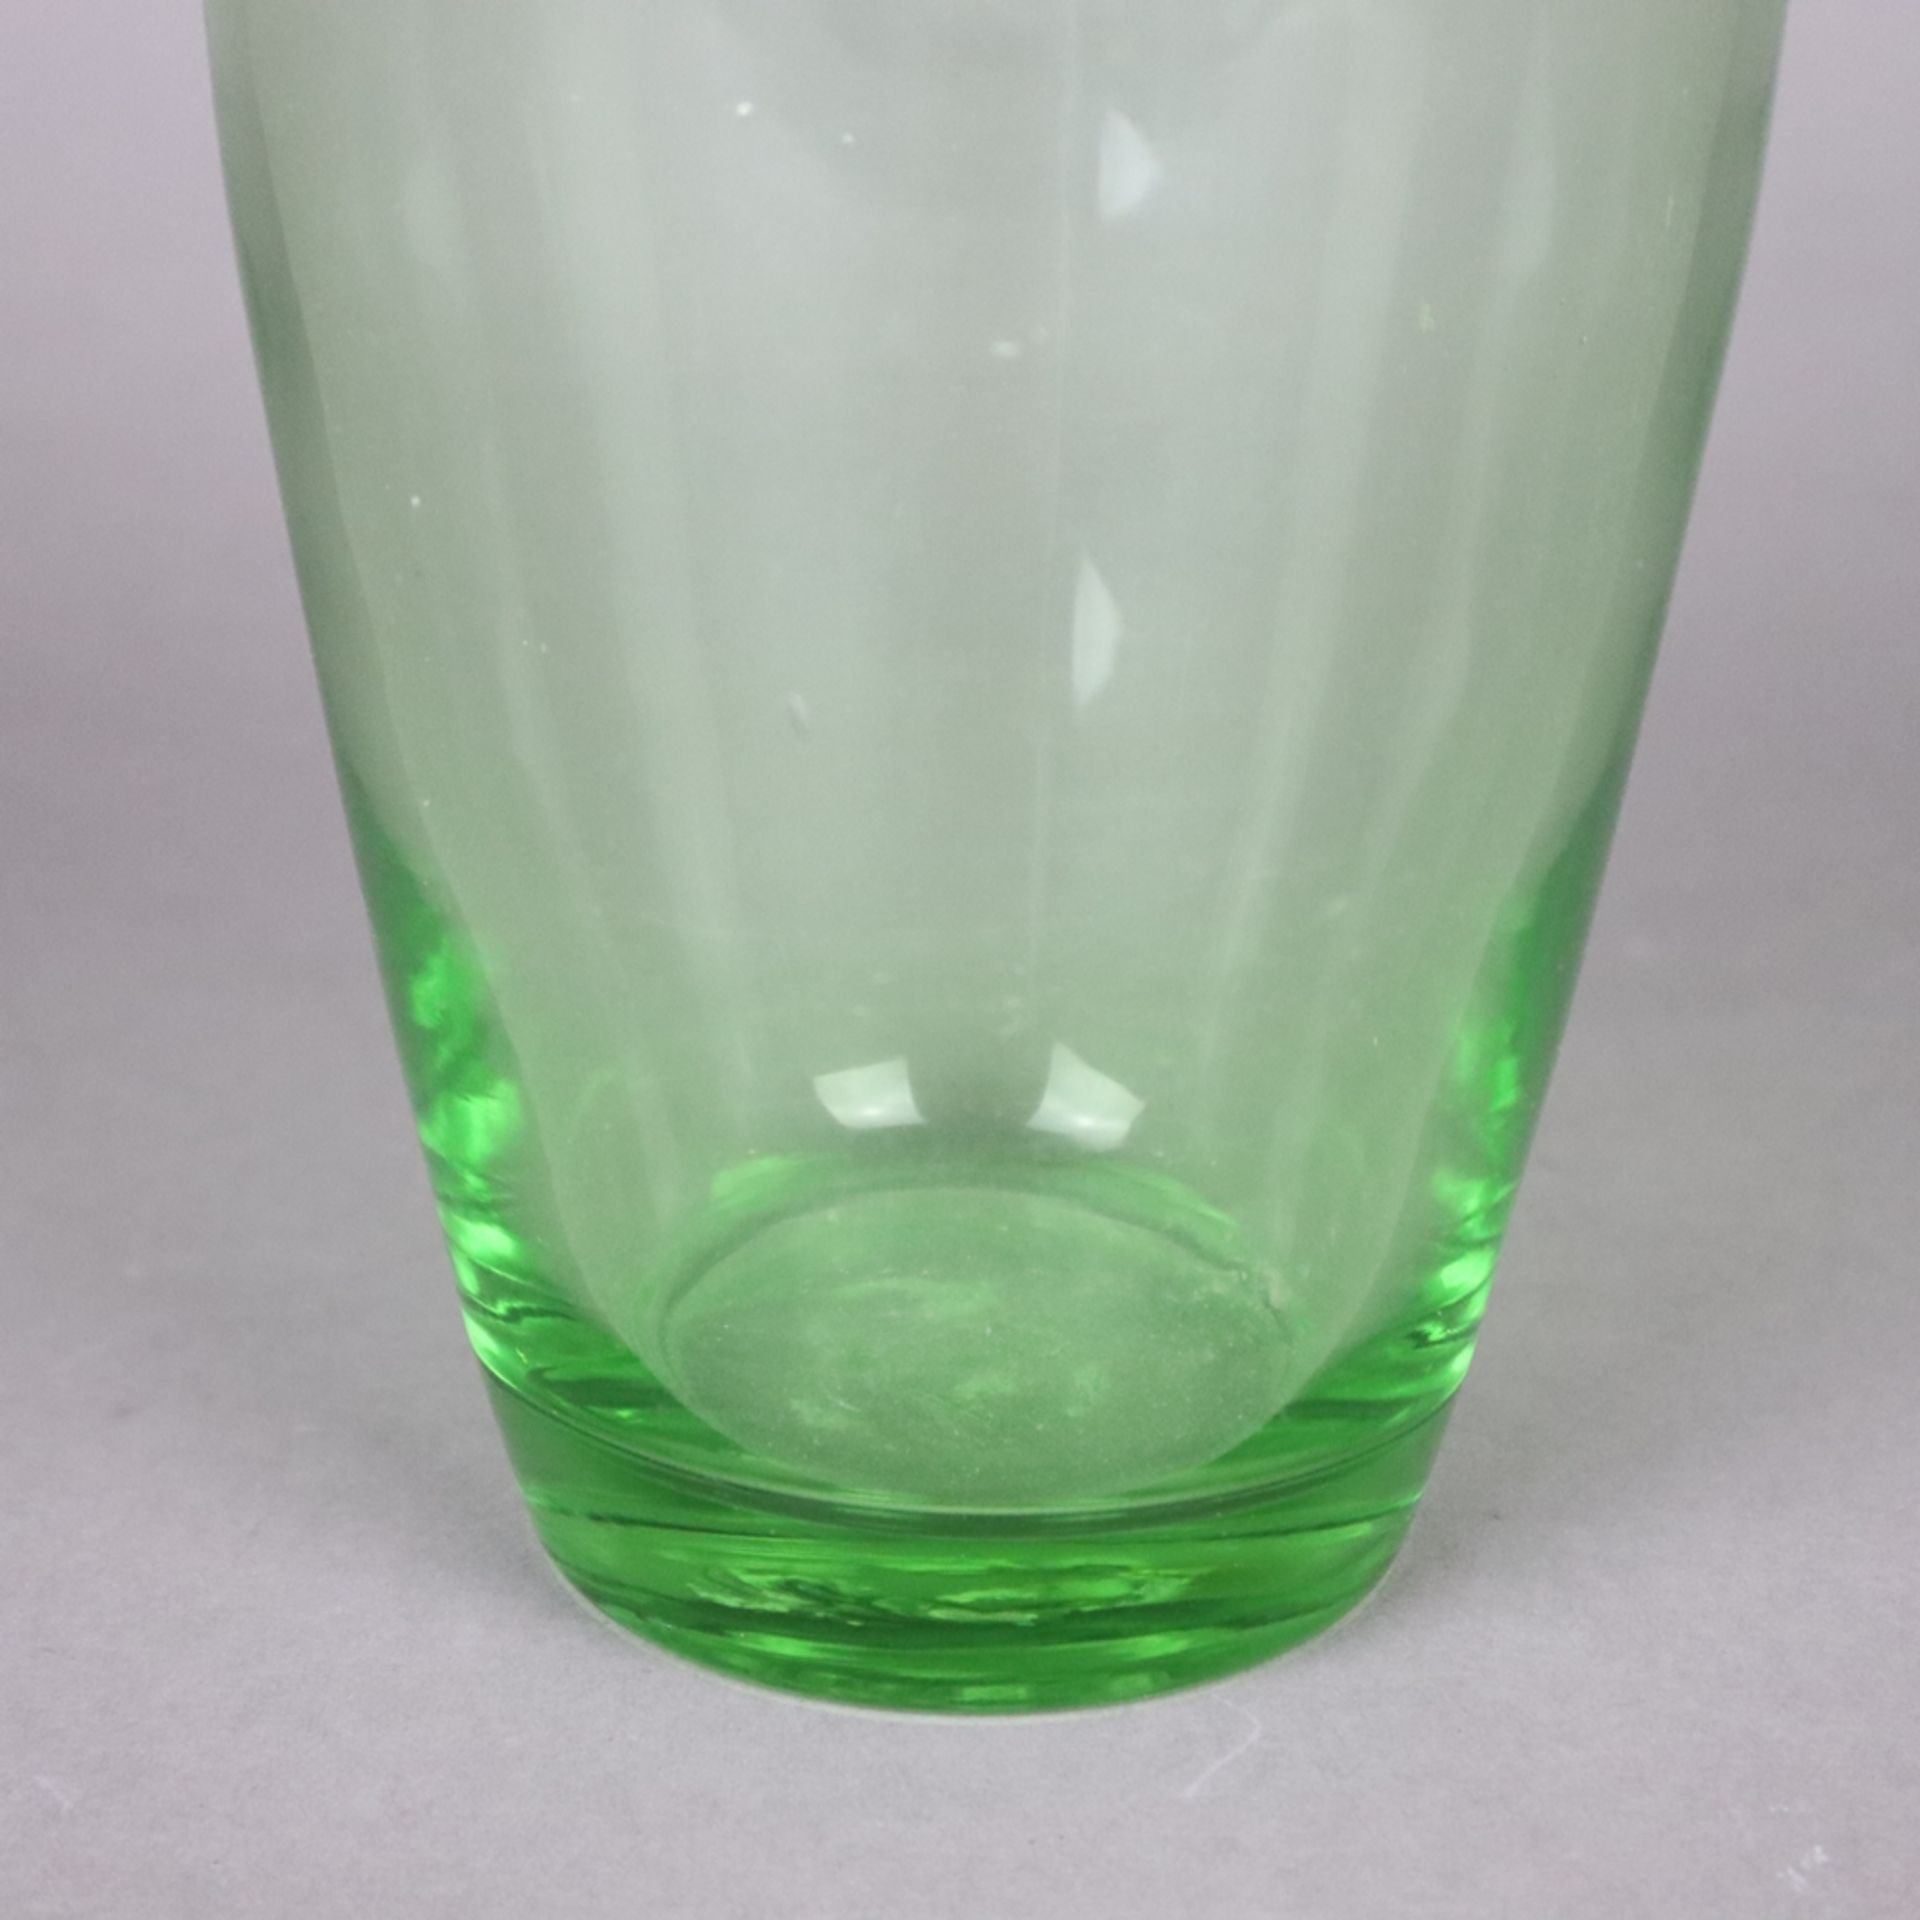 Ziervase in "Fazzoletto"- Form - Taschentuchvase, grünes Glas, mehrfach gefaltete Wandung, Boden - Bild 4 aus 7